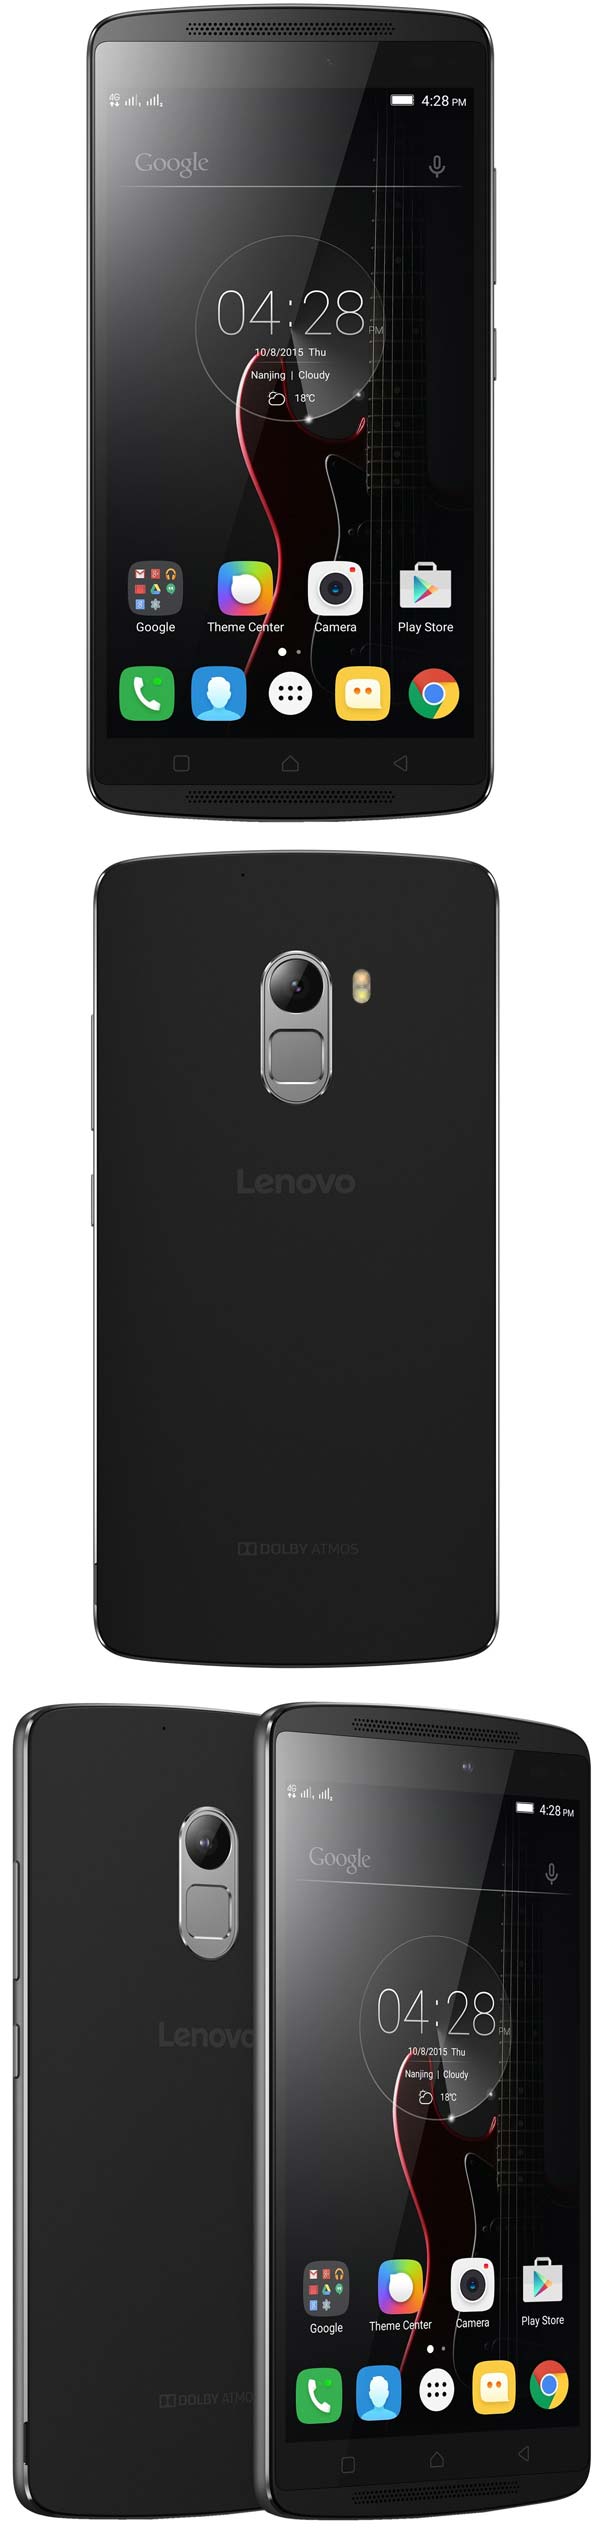 Планшетофон Lenovo A7010